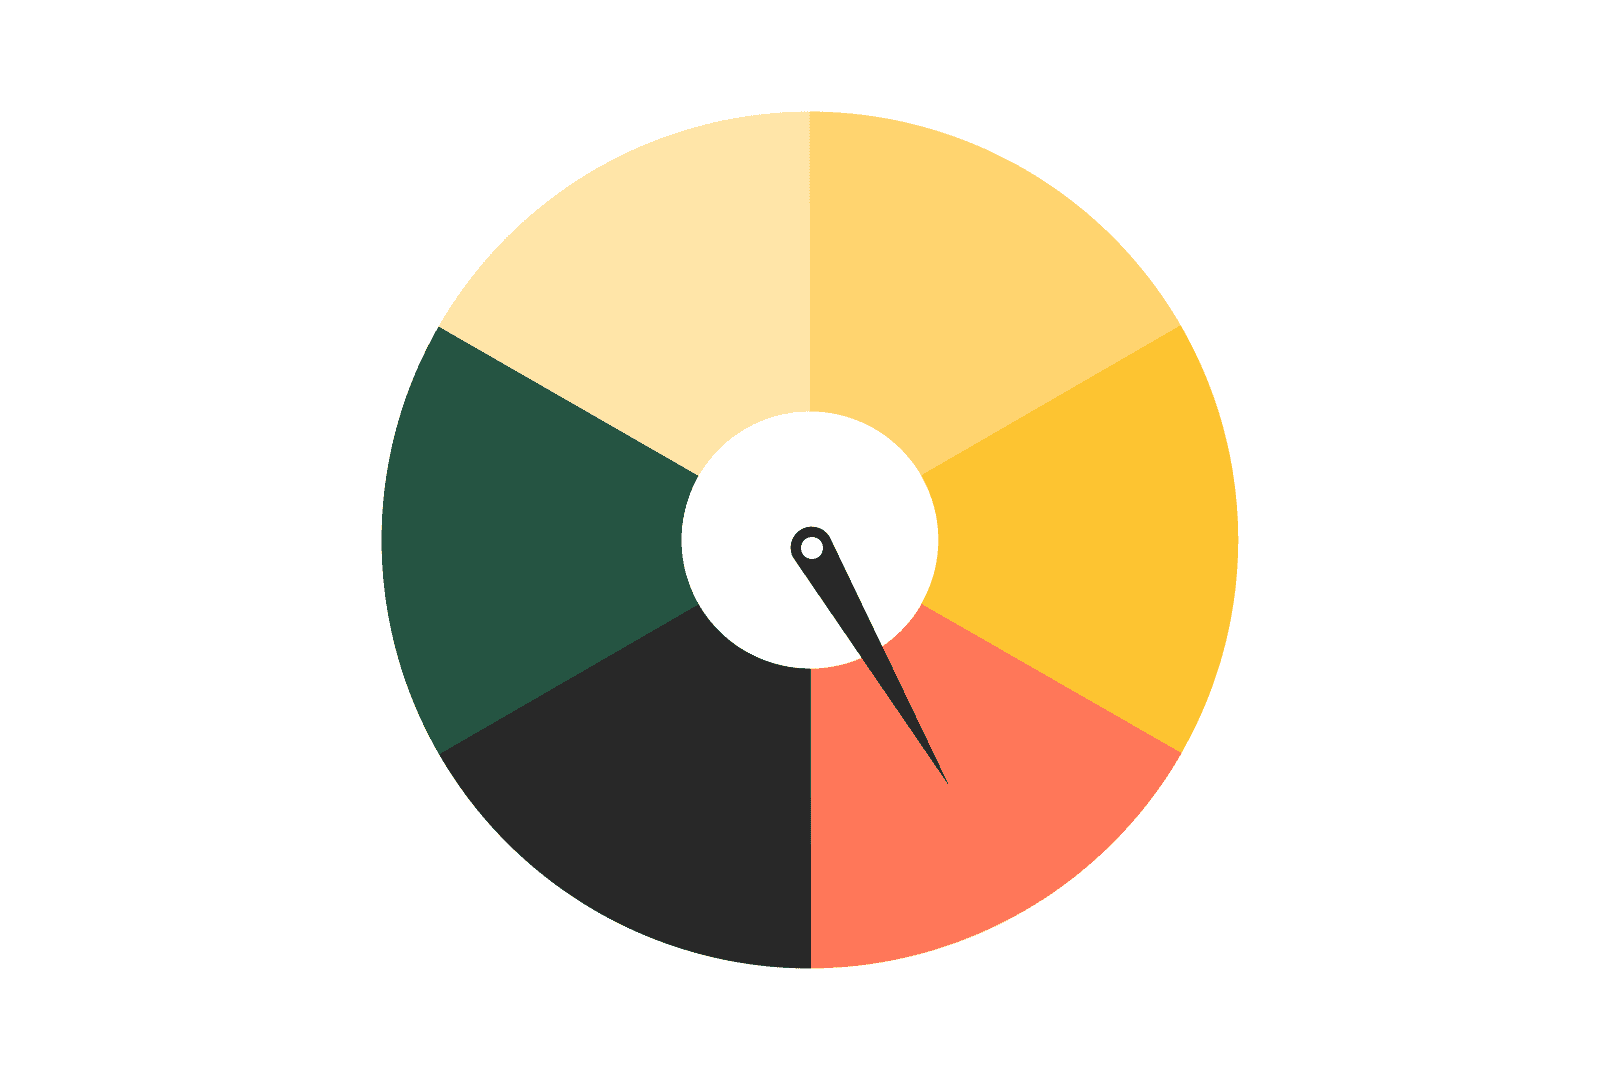 Illustration eines Scores mit verschiedenfarbigen Bereichen